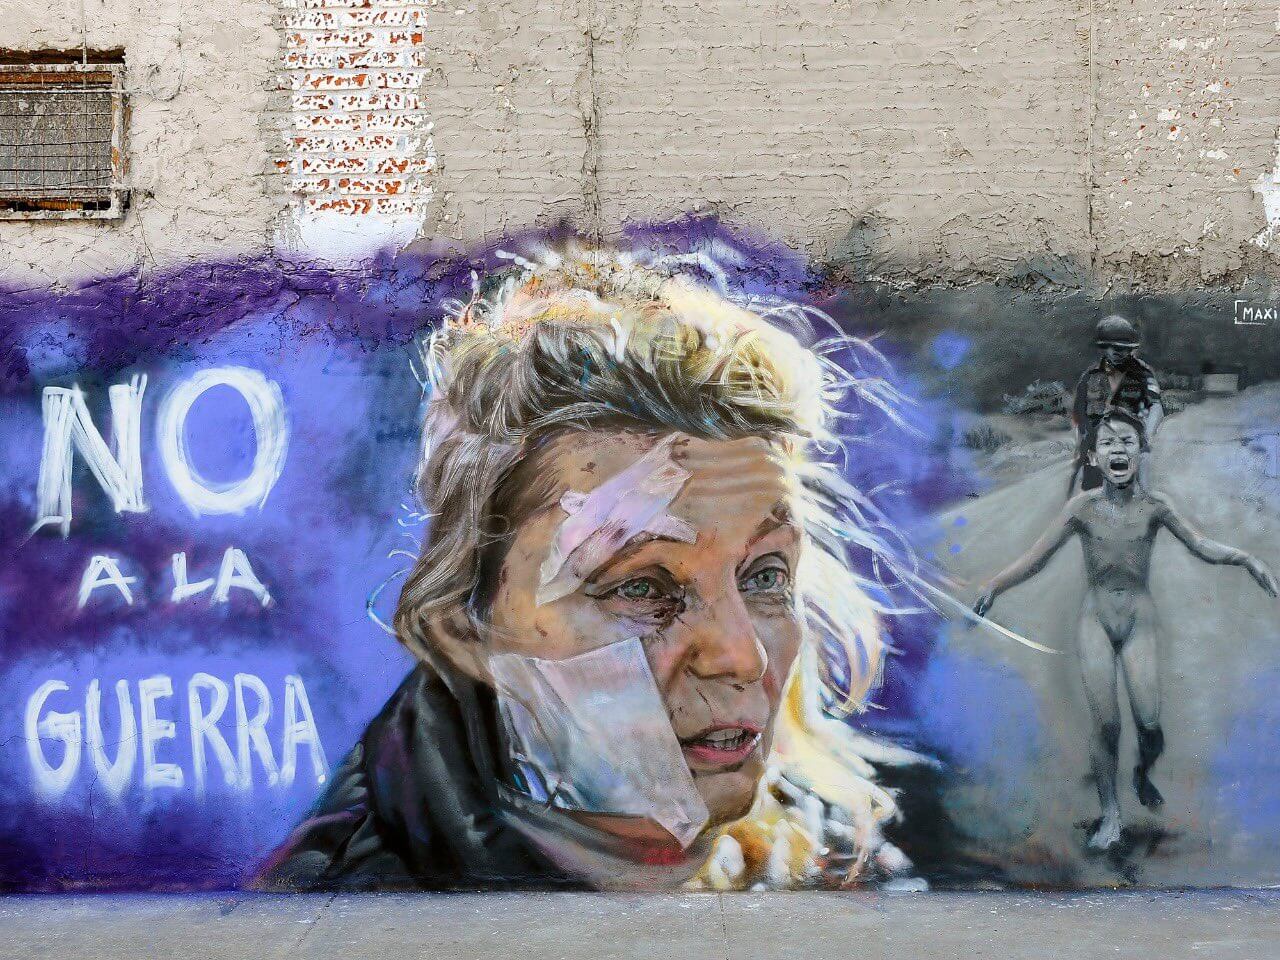 Un mural en Palermo pide “No a la guerra” entre Rusia y Ucrania